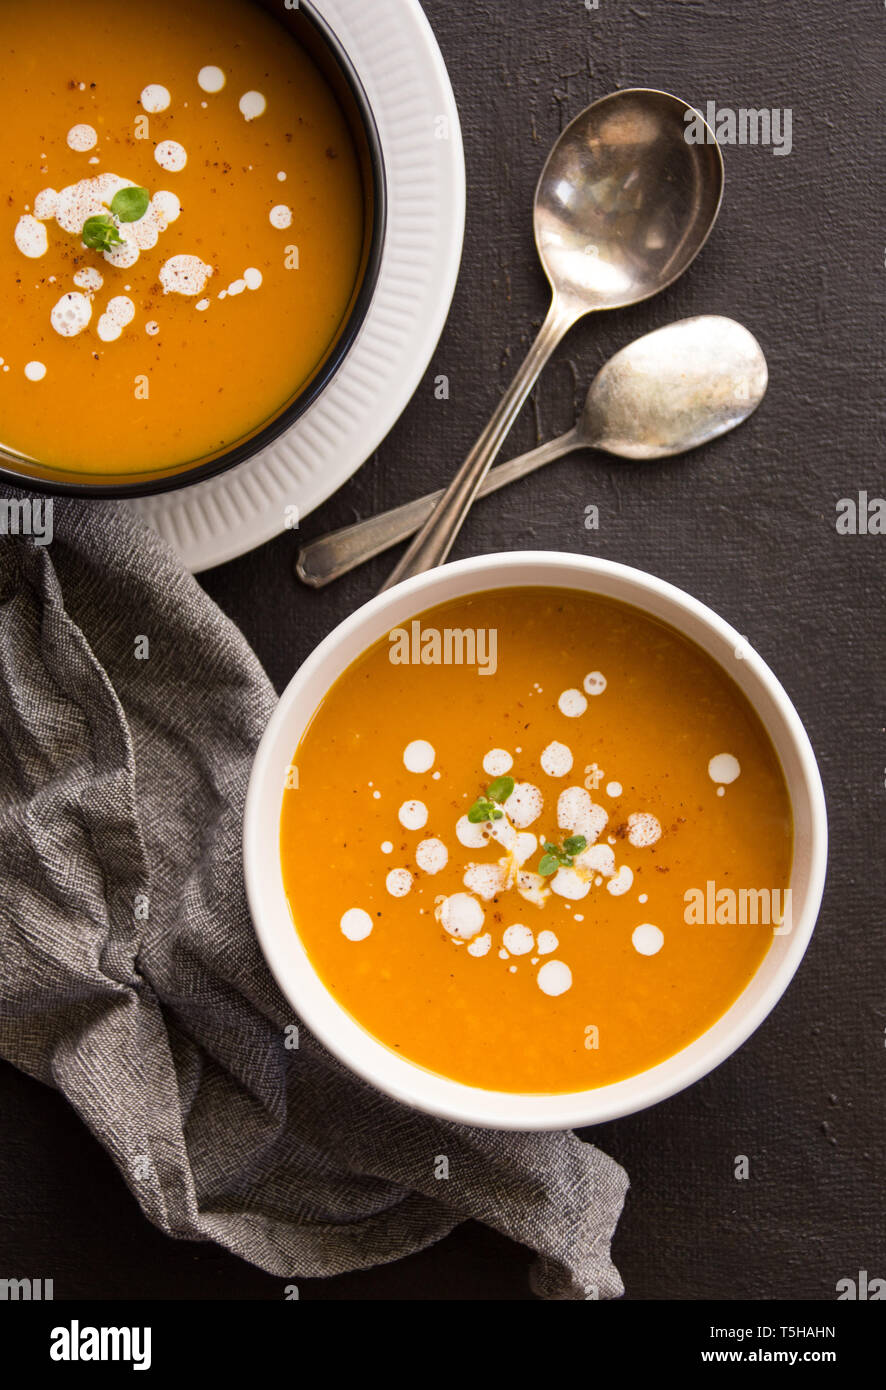 Zwei Schalen mit butternut Kürbis Suppe mit ein paar Löffel Stockfotografie  - Alamy